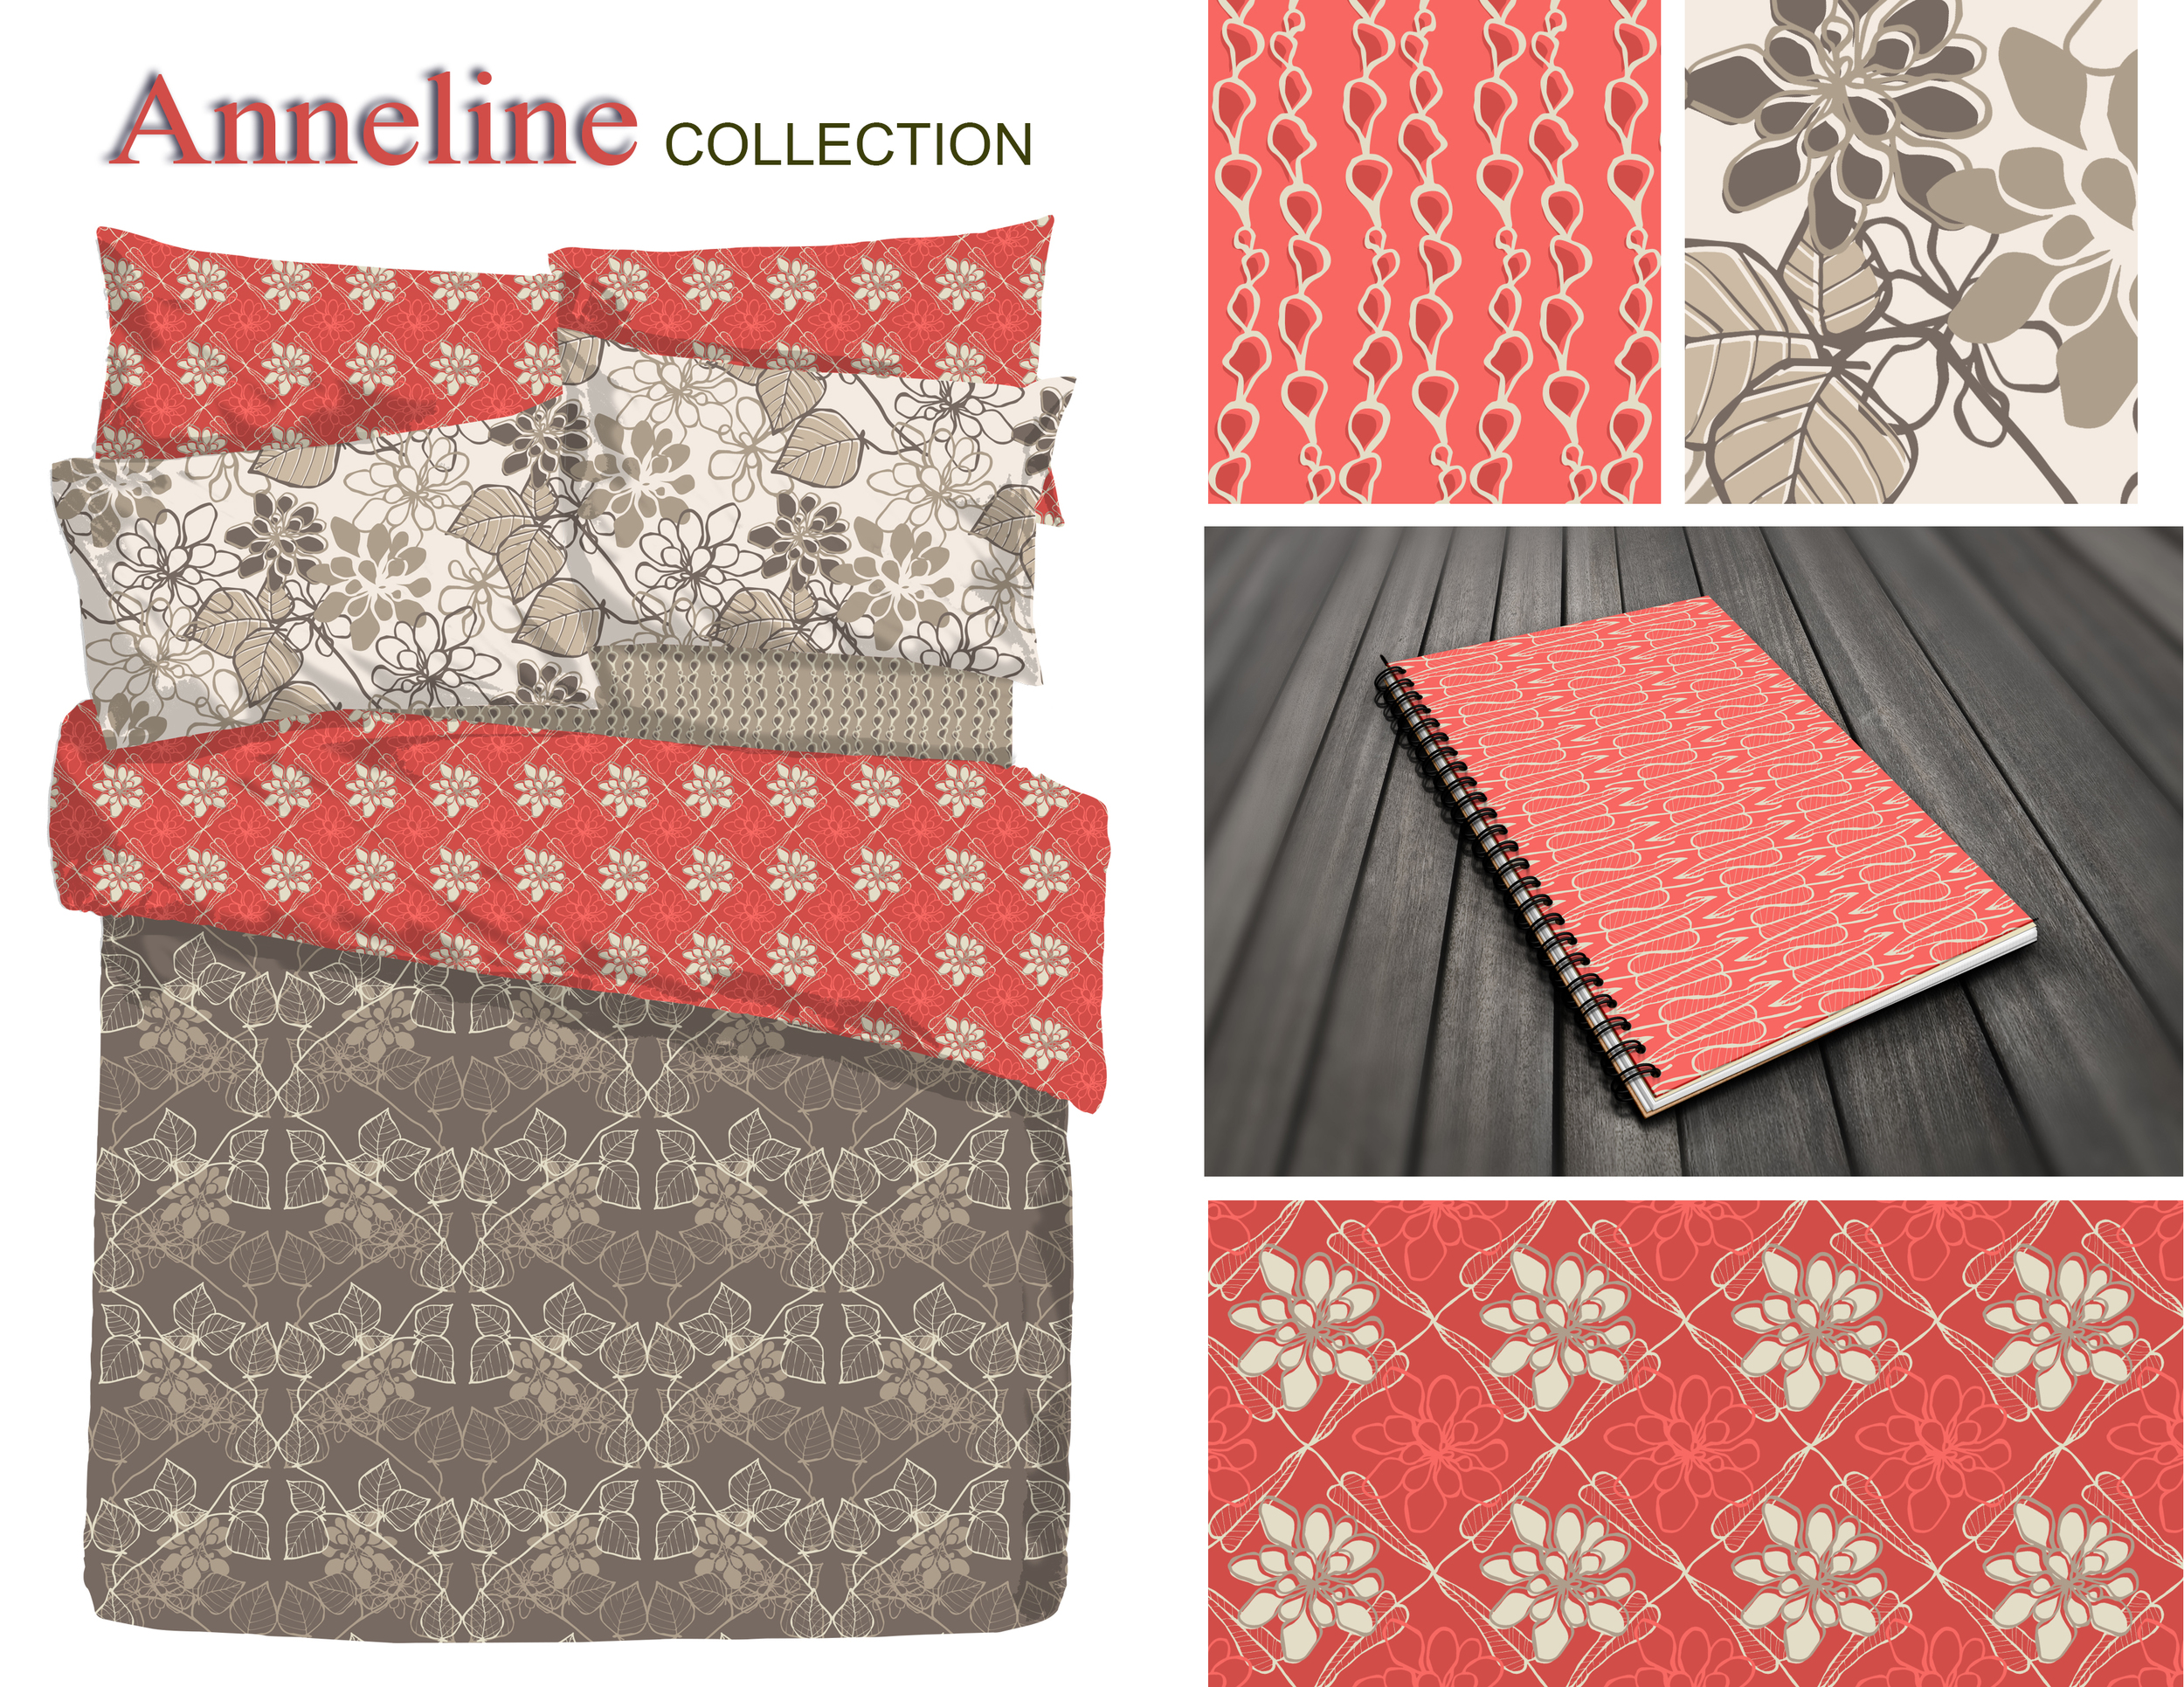 5 Anneline patterned mockups2.jpg